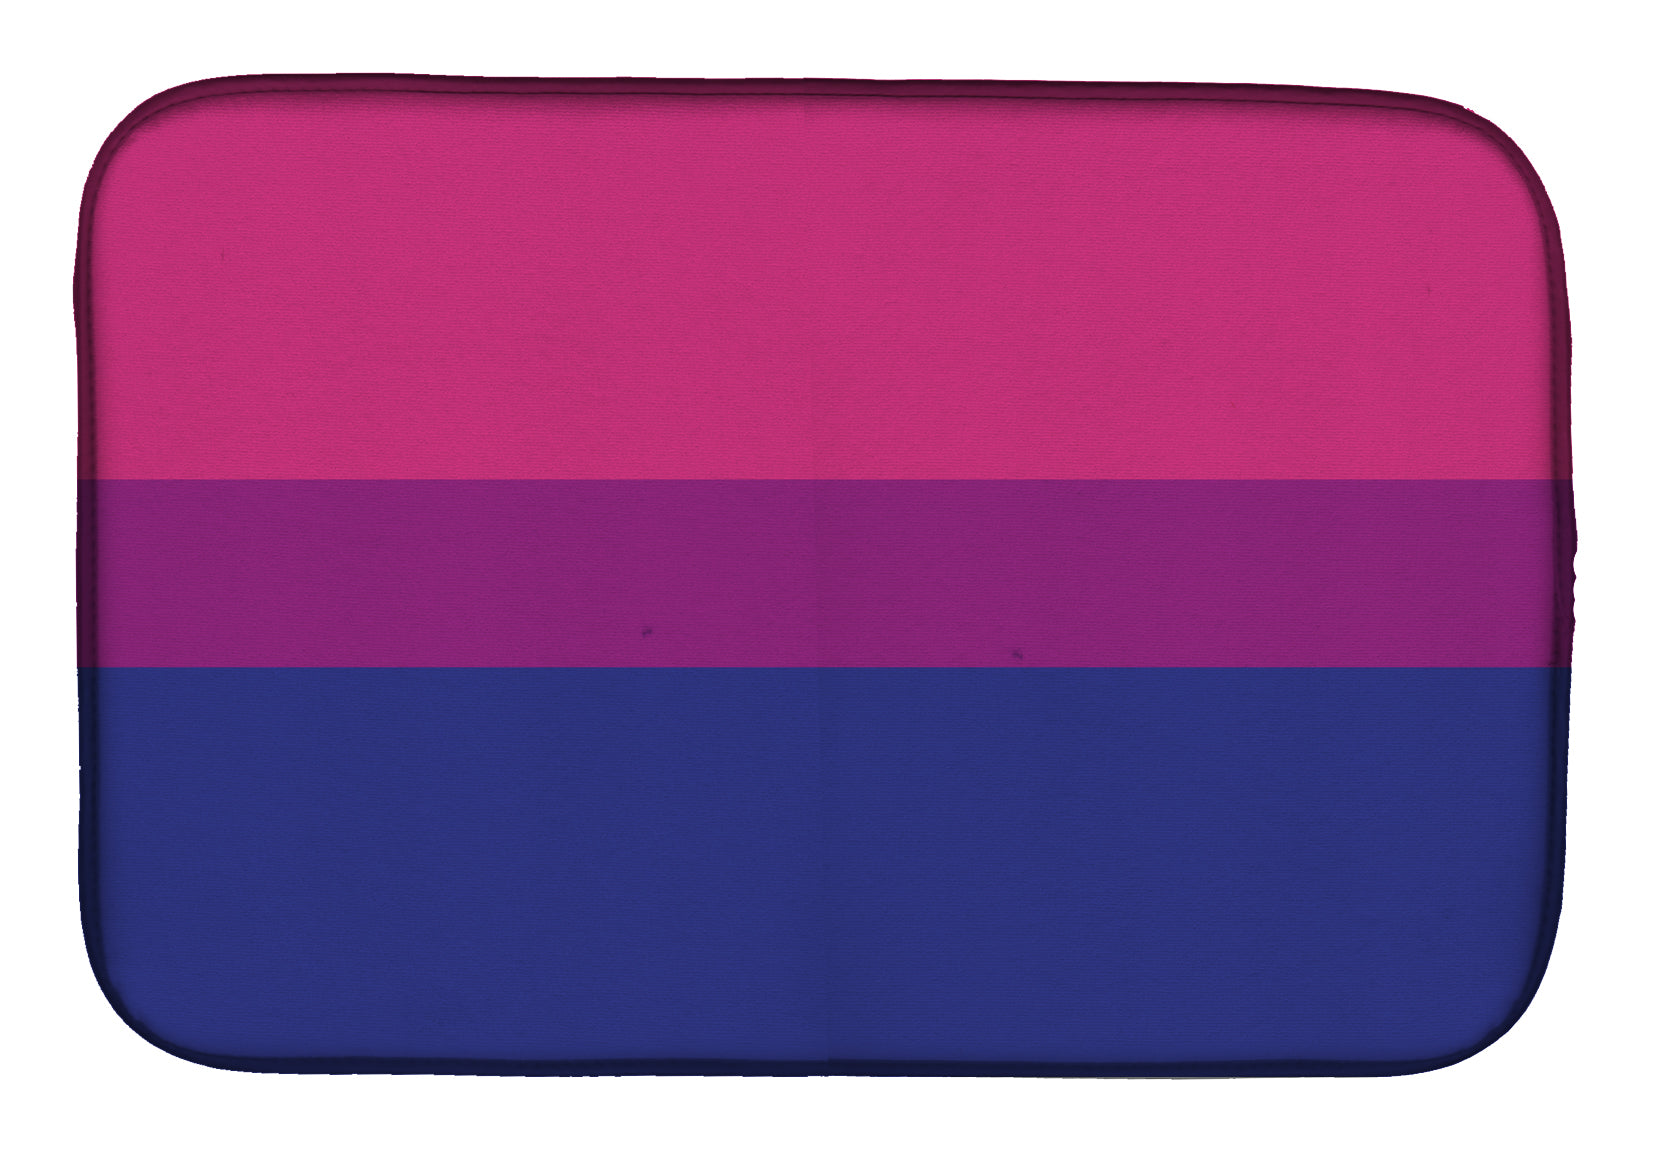 Bisexual Pride Dish Drying Mat